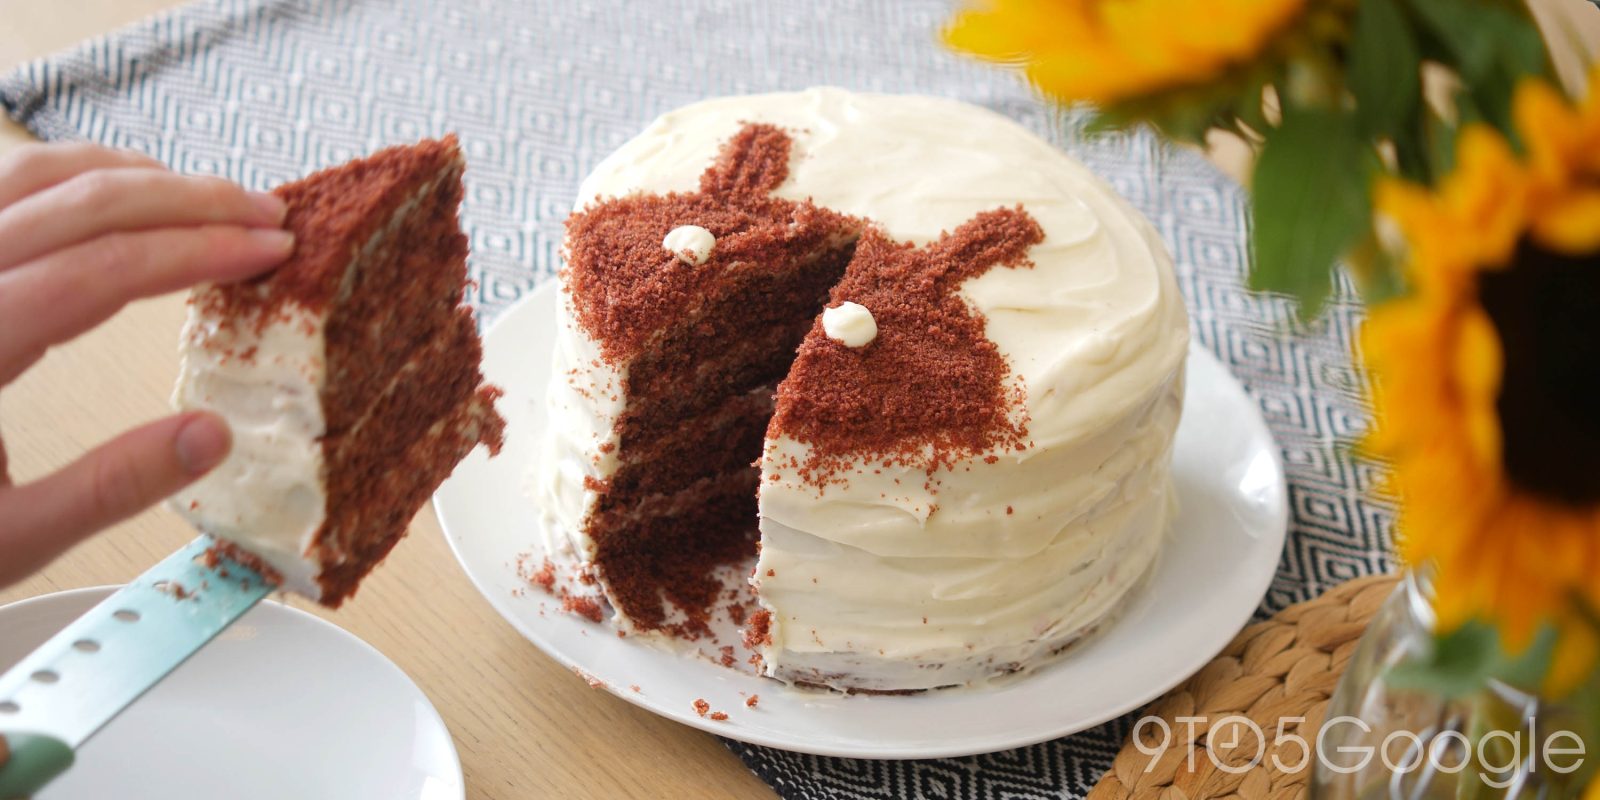 Android 11 red velvet cake